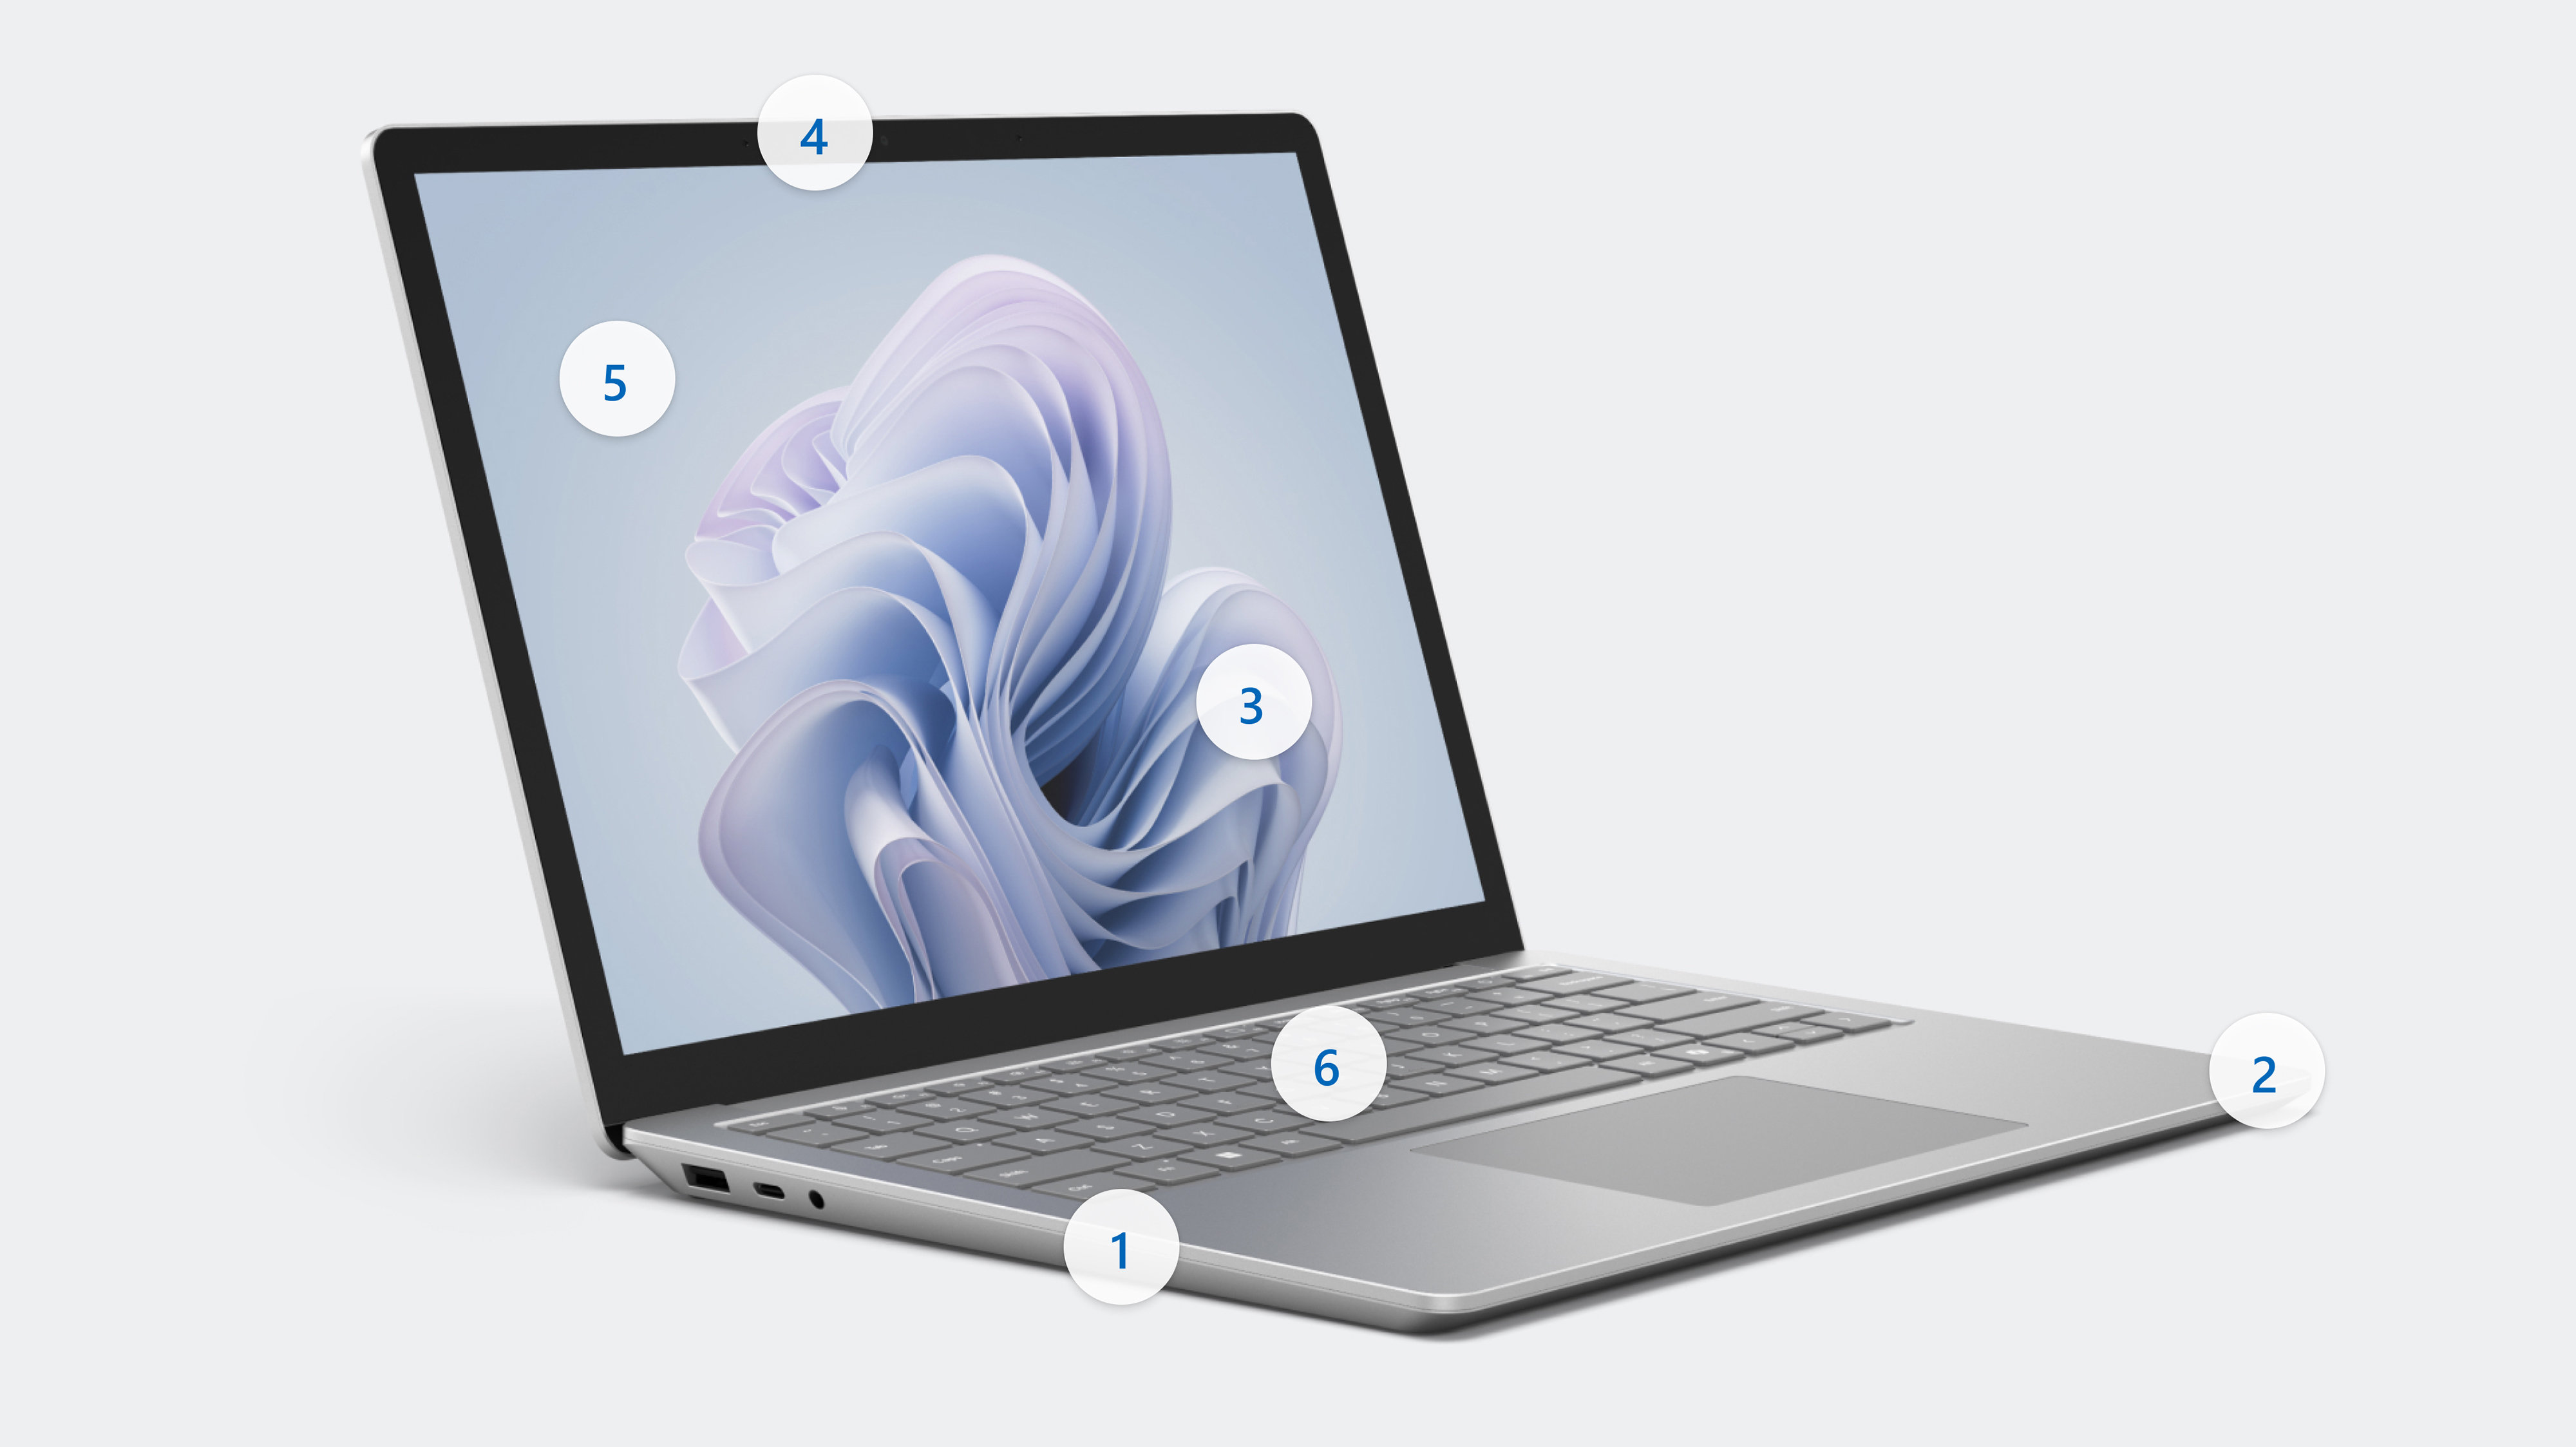 展示 Surface Laptop 6 顯示熱點 1 到 6